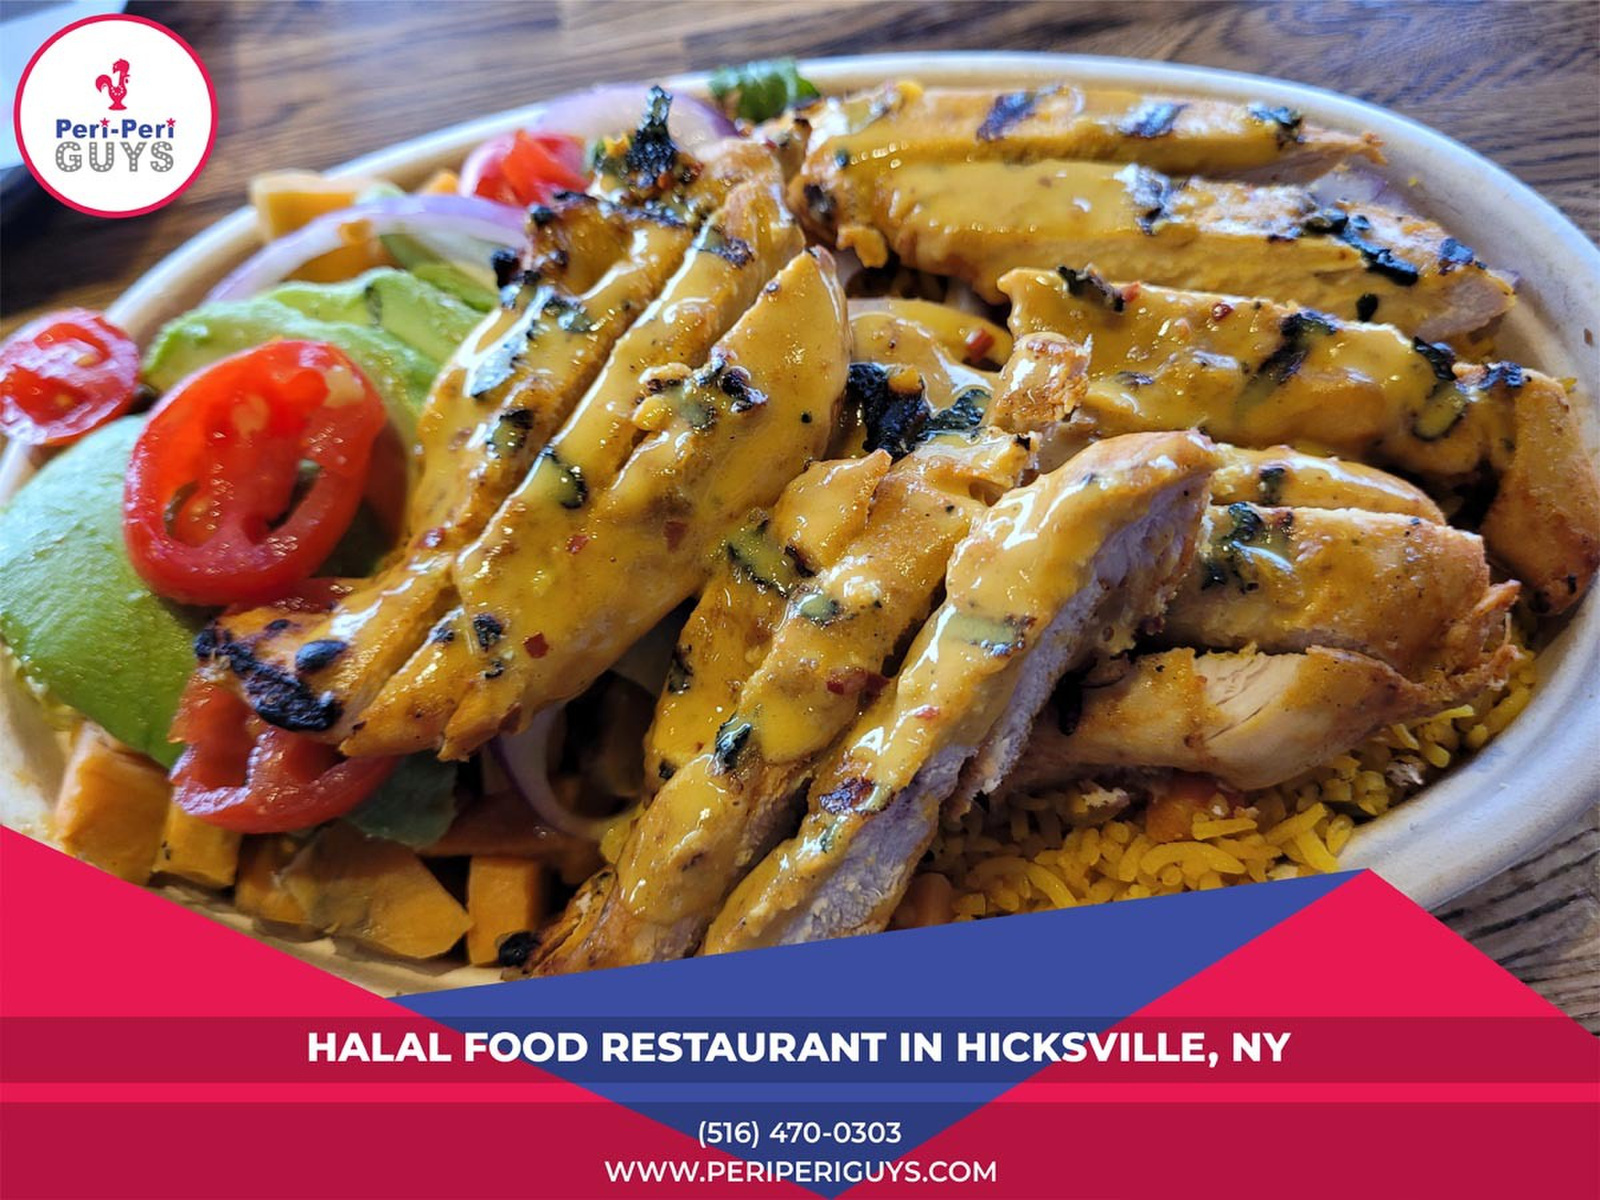 Best Hamburger restaurants in Hicksville NY